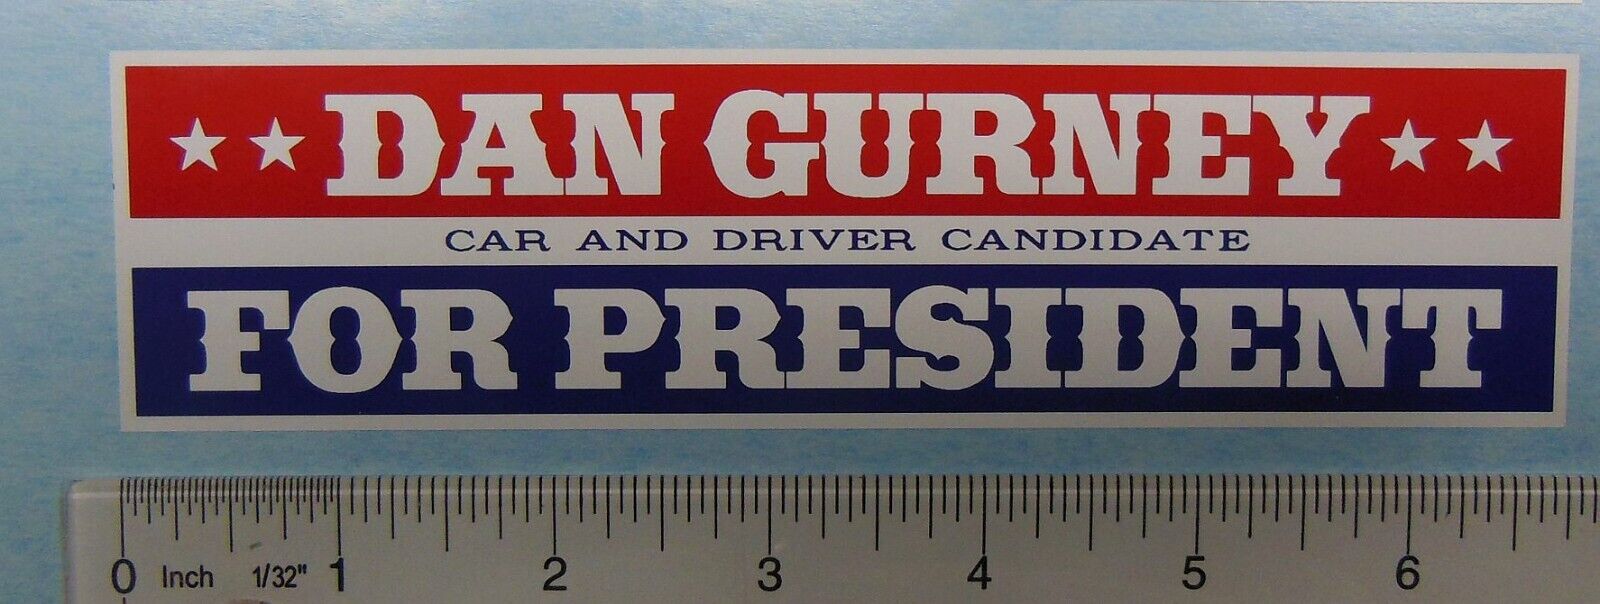 Dan Gurney for President decal